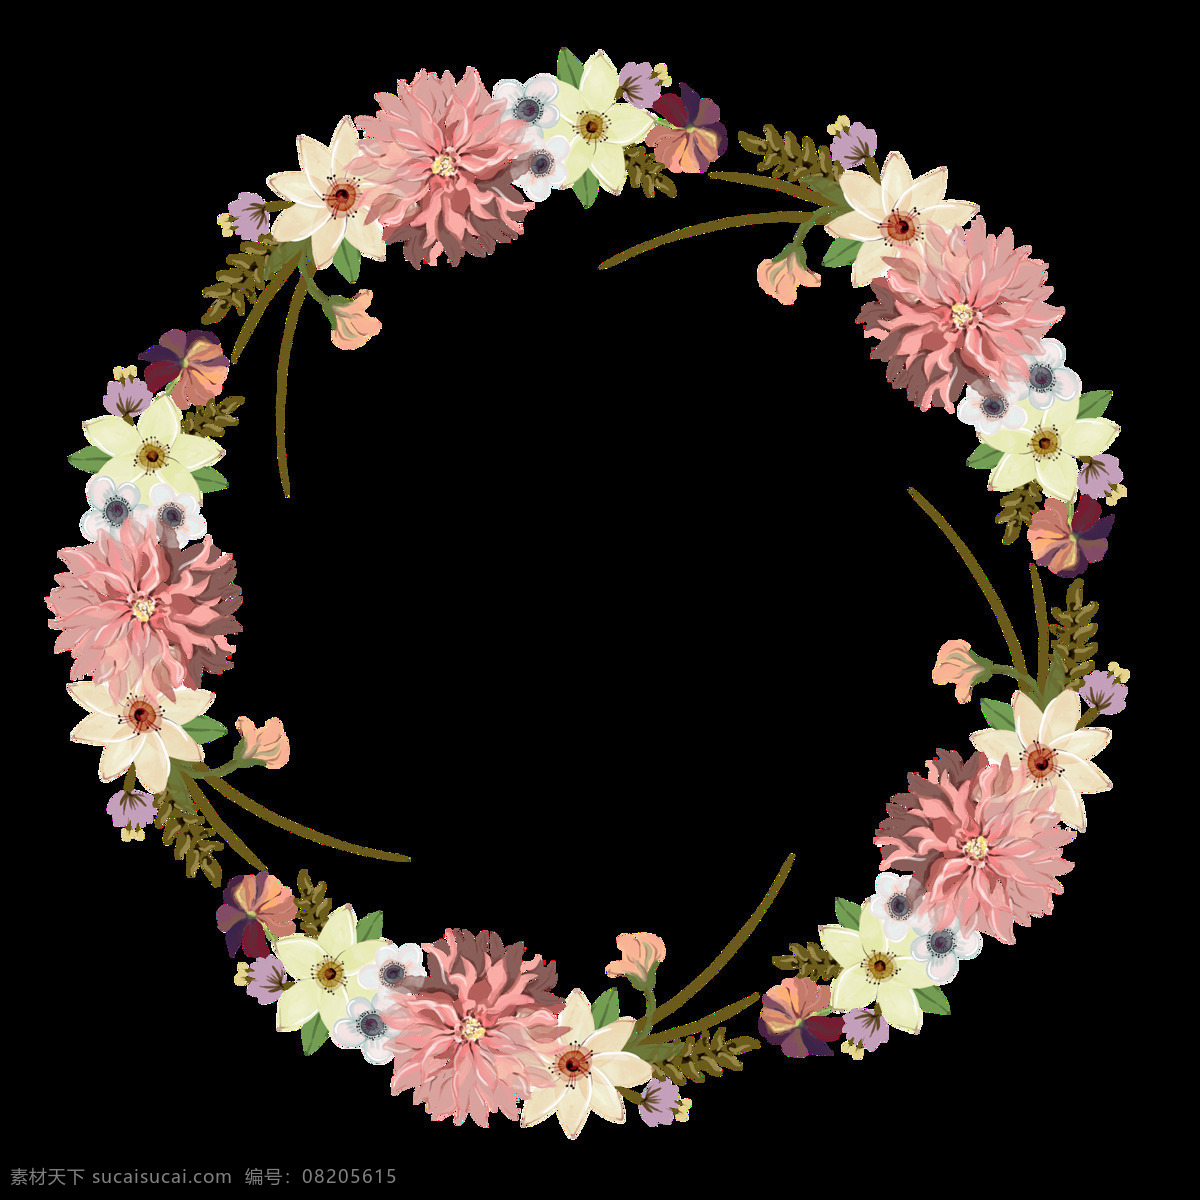 手绘 粉色 对称 花朵 圆环 透明 浪漫 气氛 节日 植物 圆形 透明素材 免扣素材 装饰图片